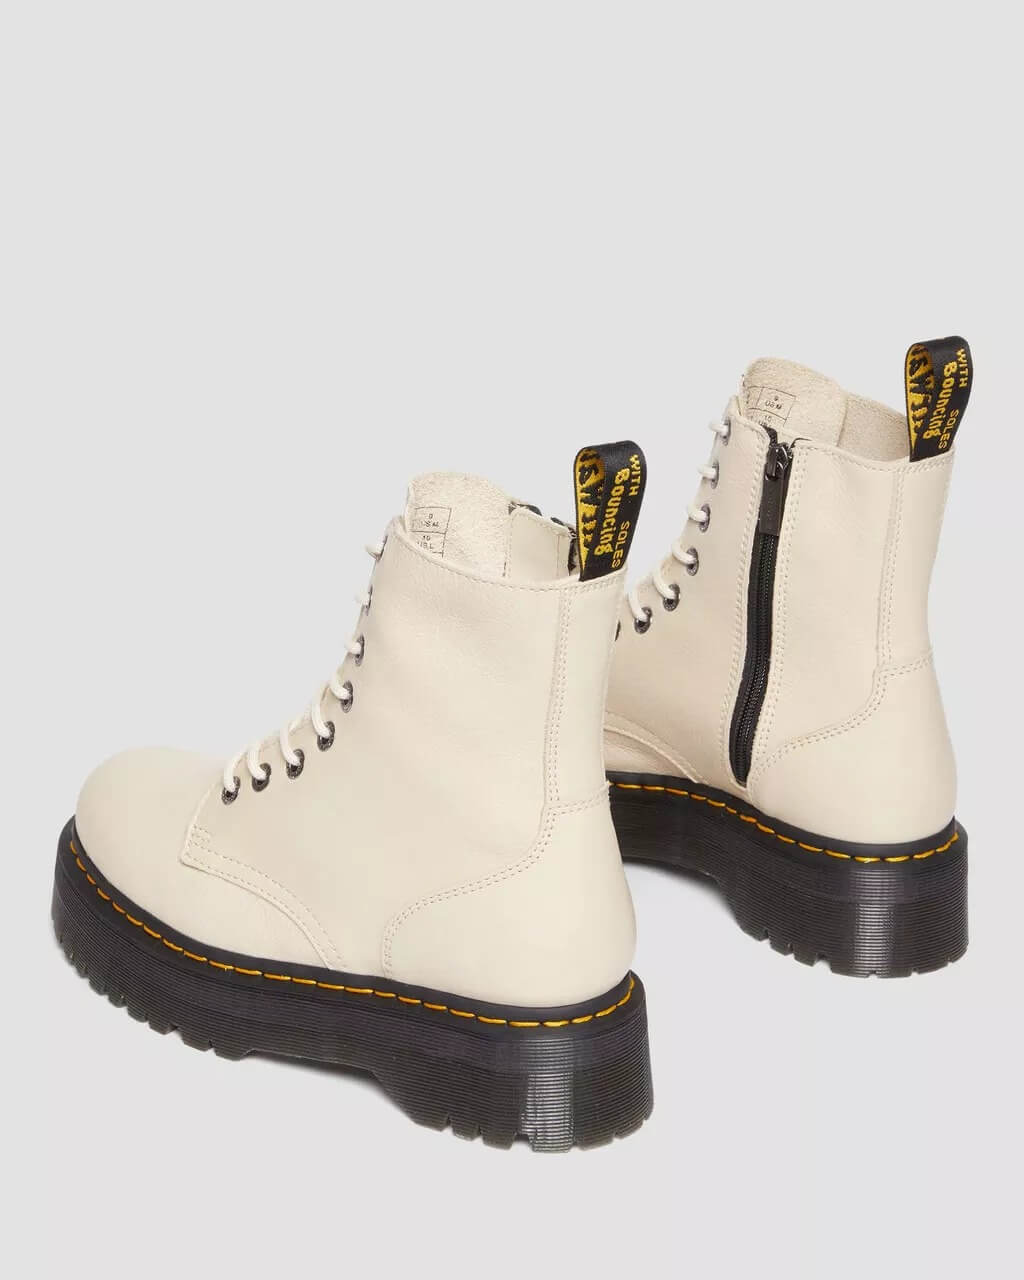 Ботинки Dr. Martens Jadon Boot Pisa Leather Platforms, бежевый – купить сдоставкой из-за рубежа через платформу «CDEK.Shopping»